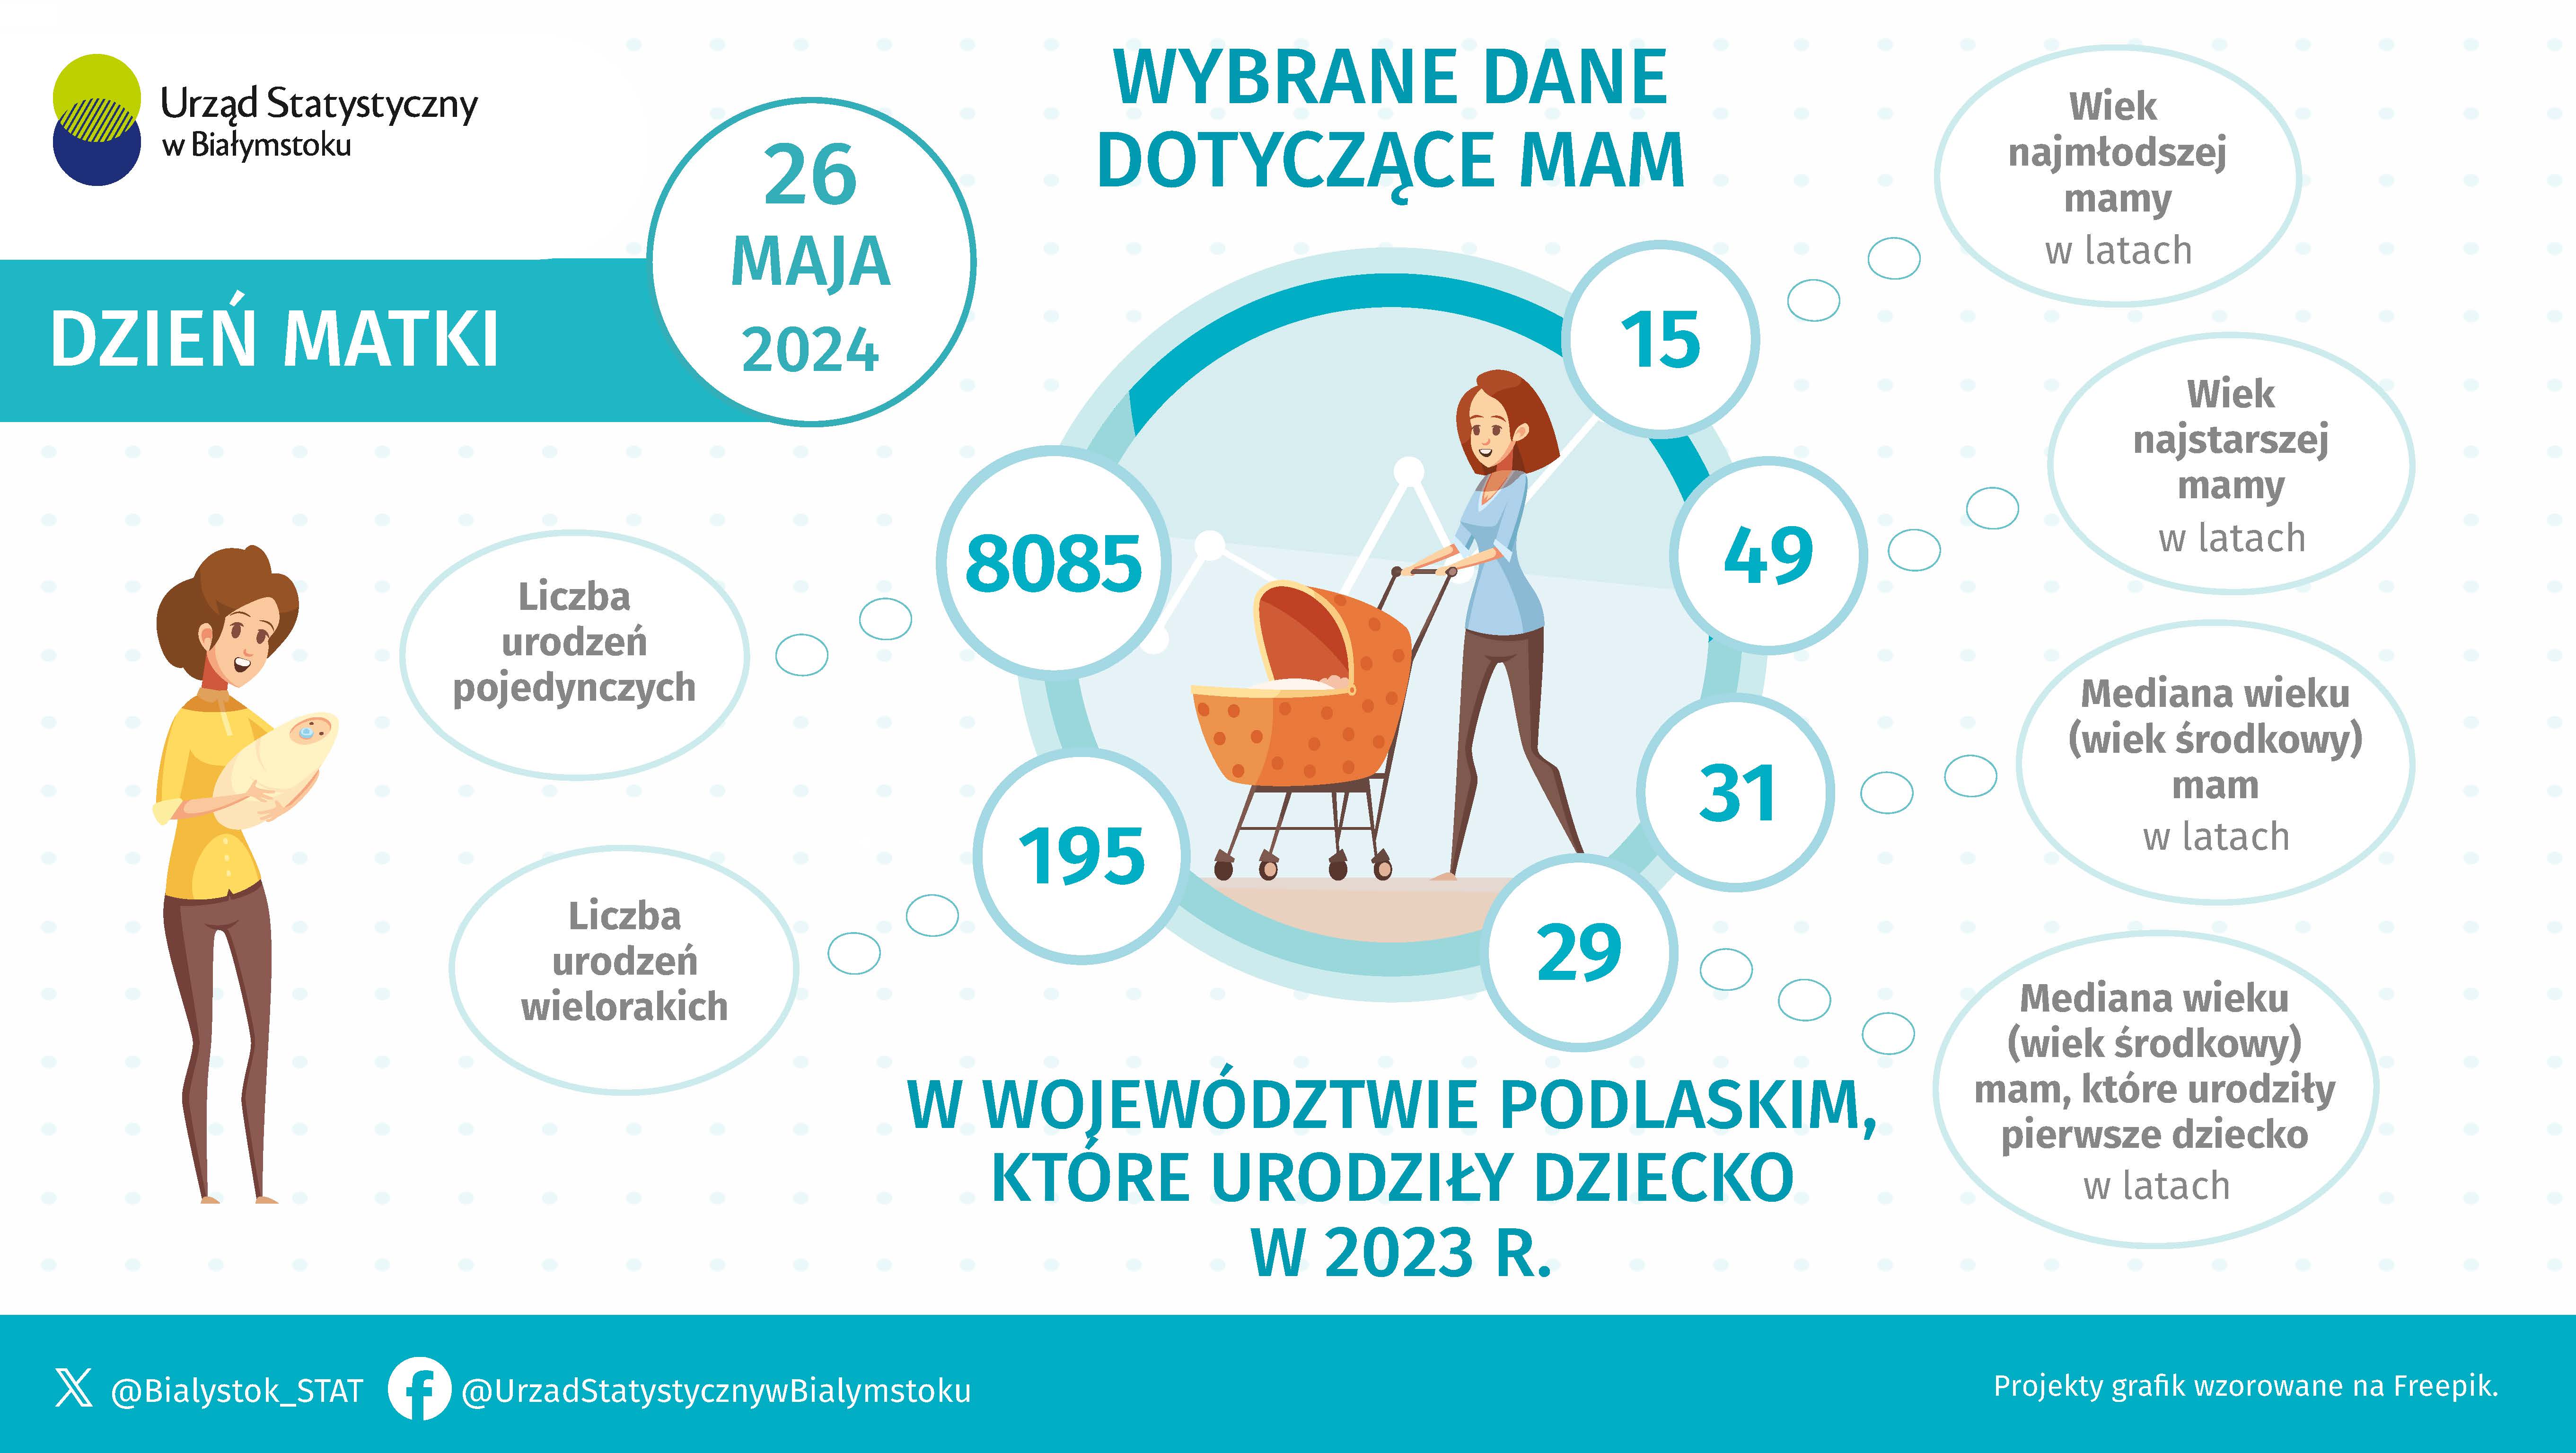 Infografika, która prezentuje wybrane dane dotyczące mam w województwie podlaskim, które urodziły dziecko w 2023 roku